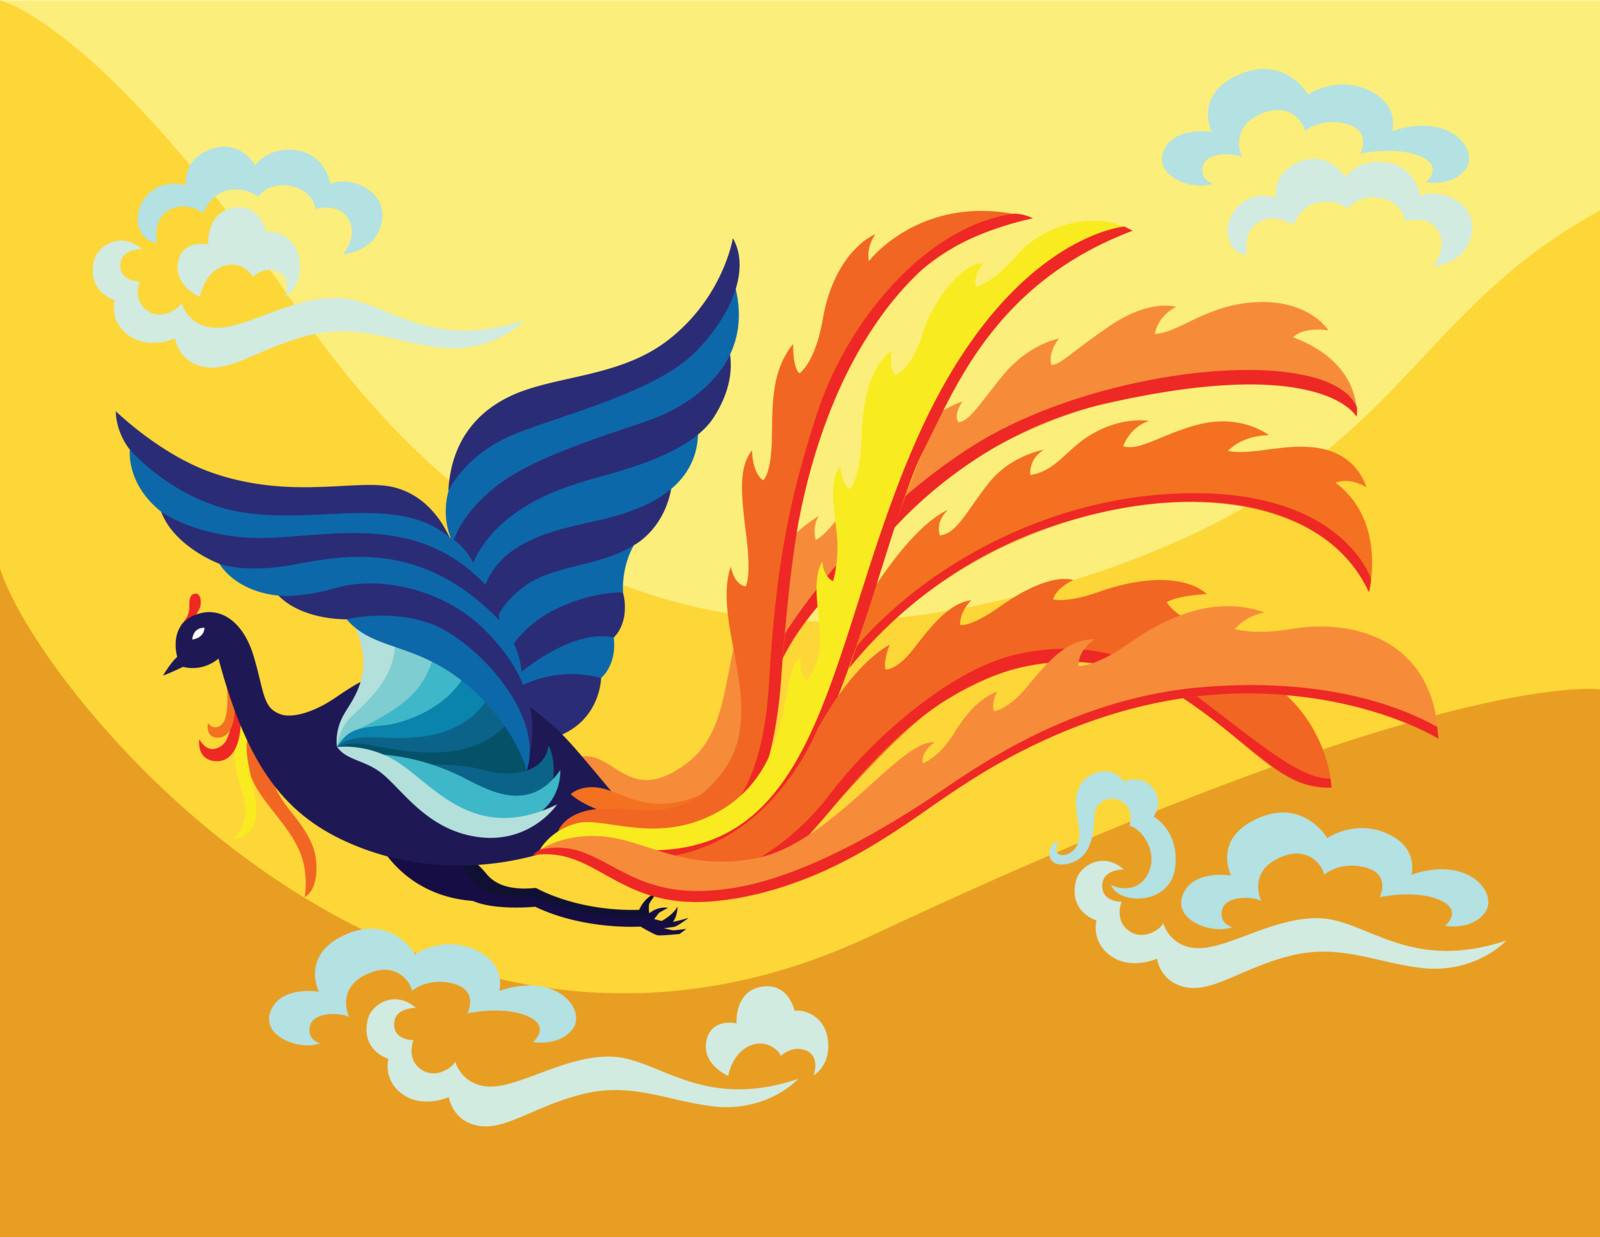 Oriental flying phoenix by zhou77